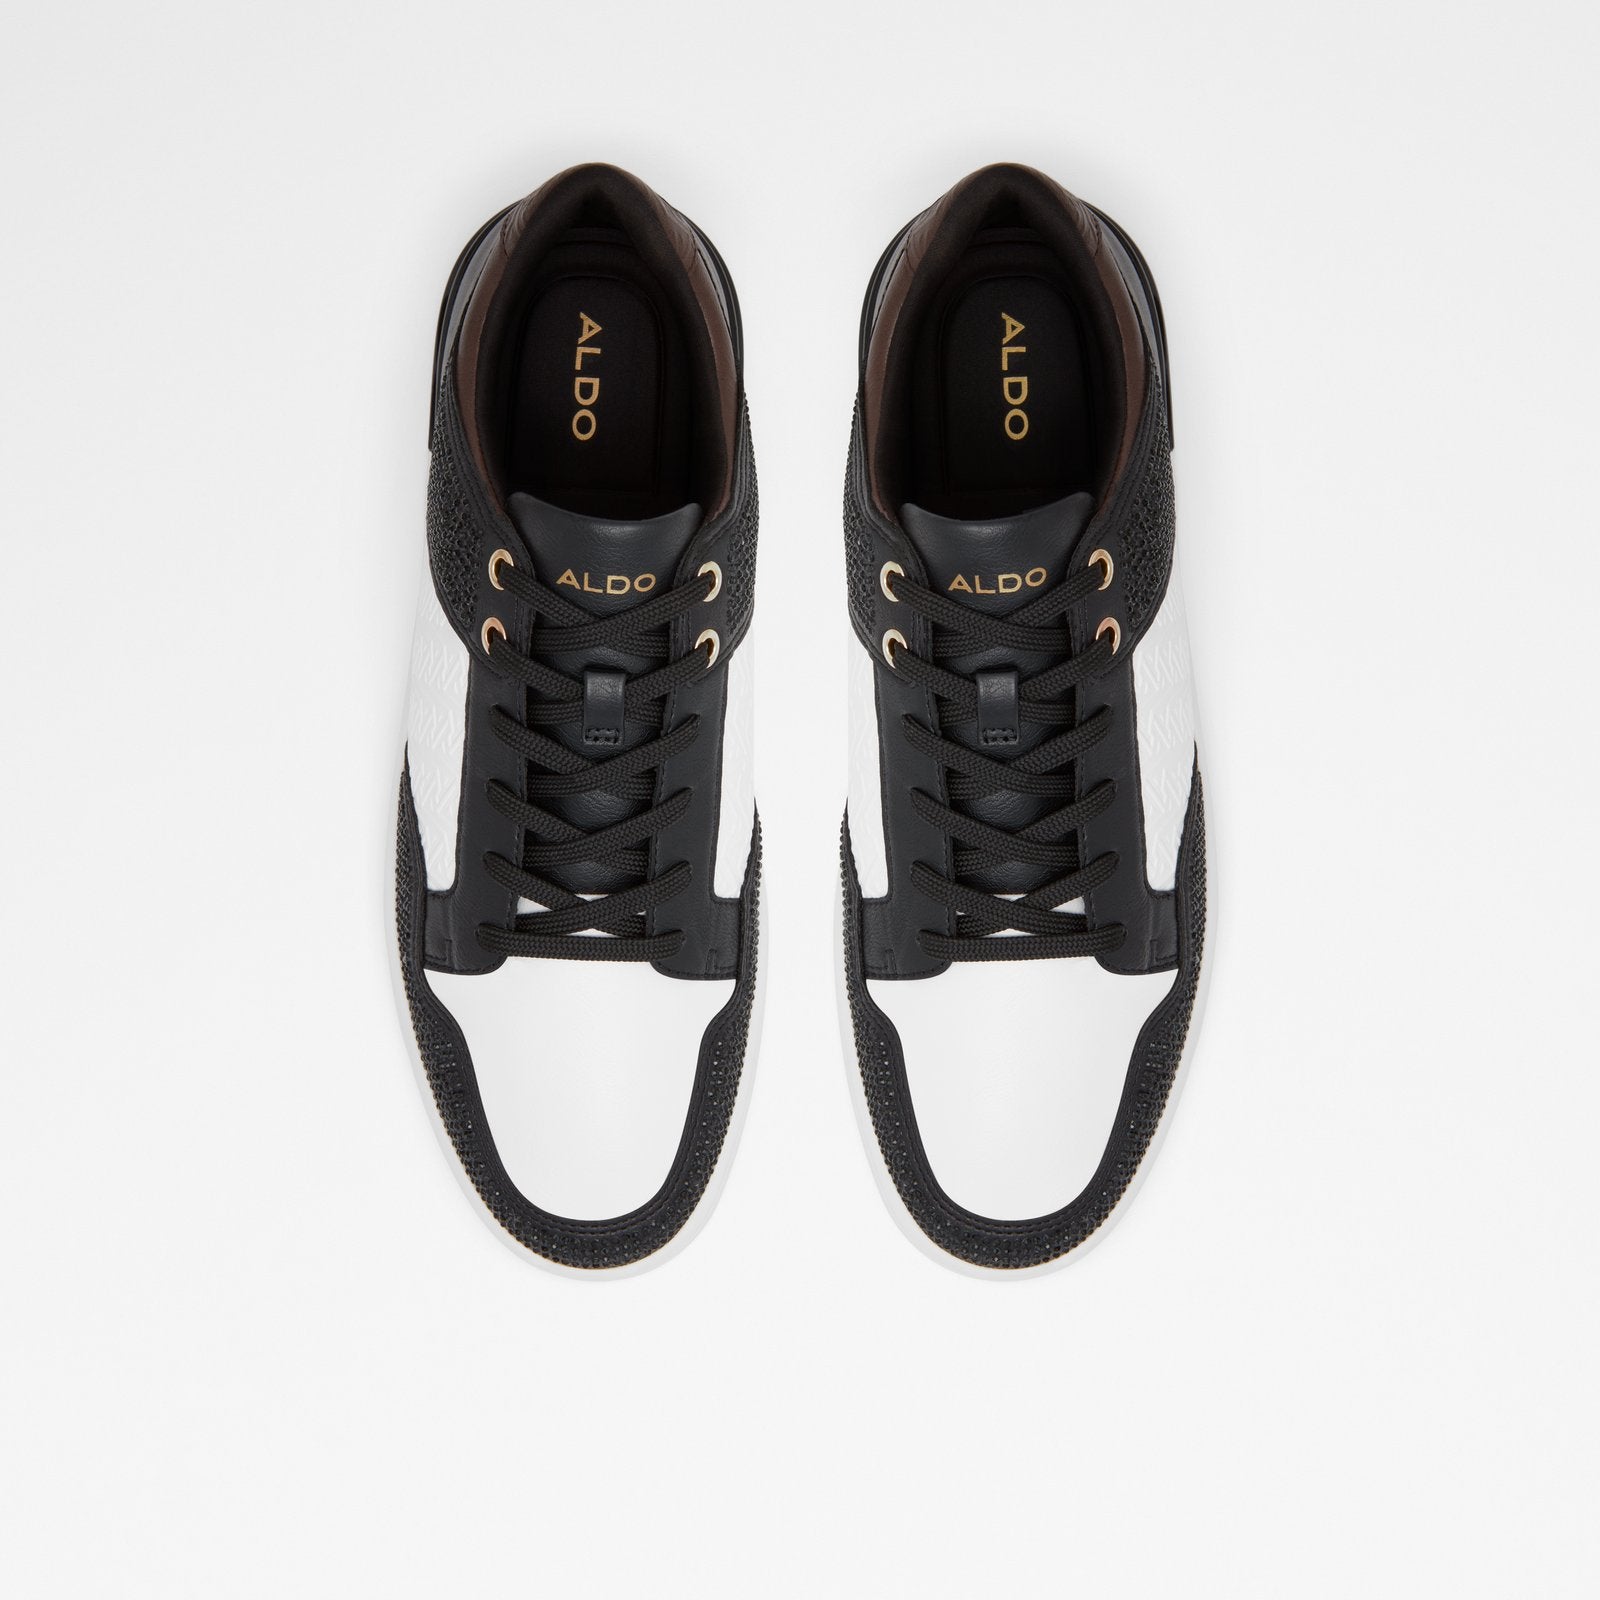 Lauder Men Shoes - Black - ALDO KSA